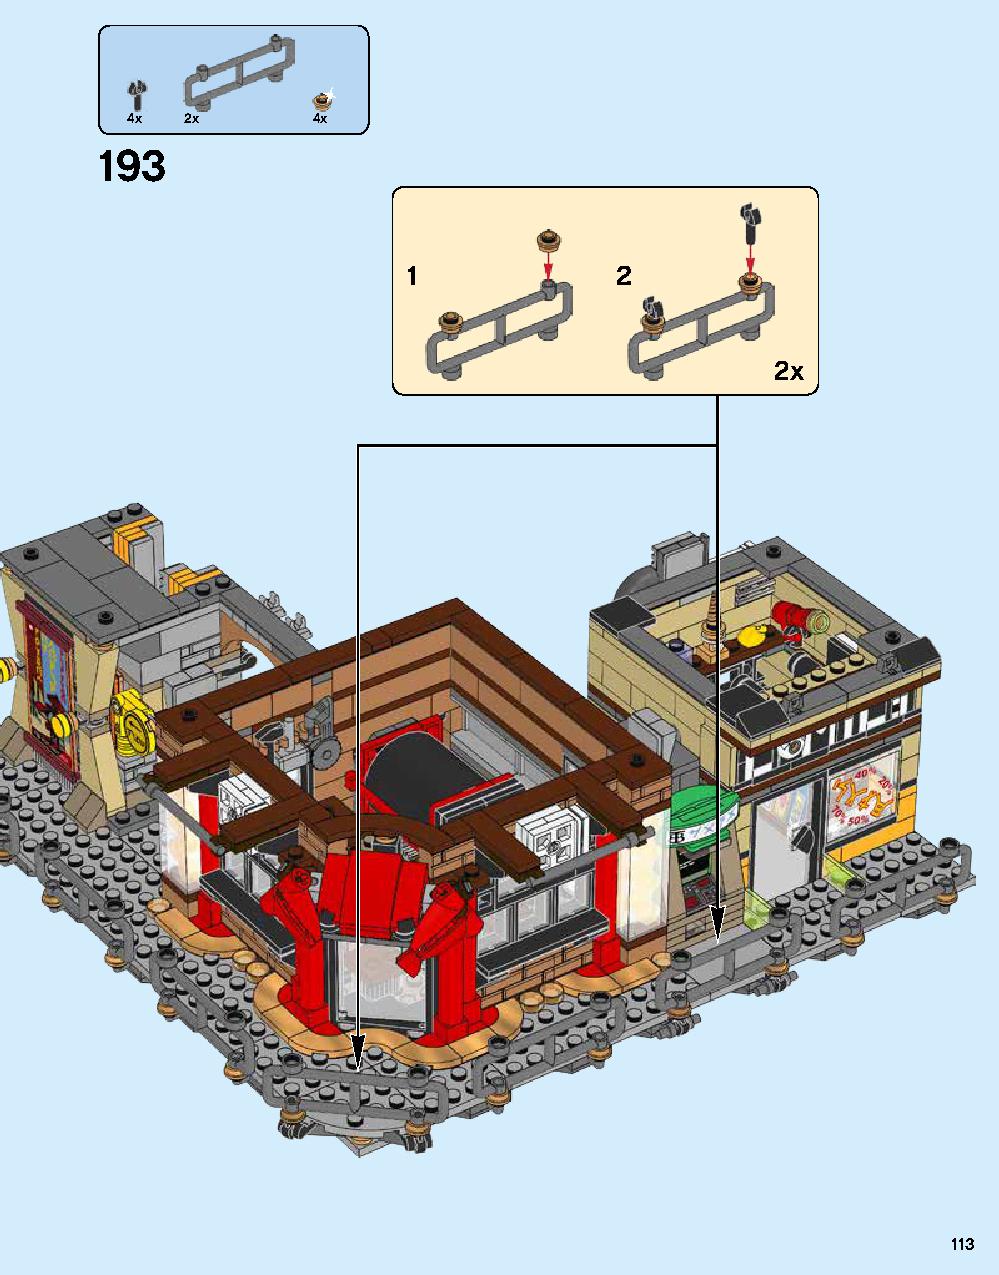 ニンジャゴー シティ 70620 レゴの商品情報 レゴの説明書・組立方法 113 page